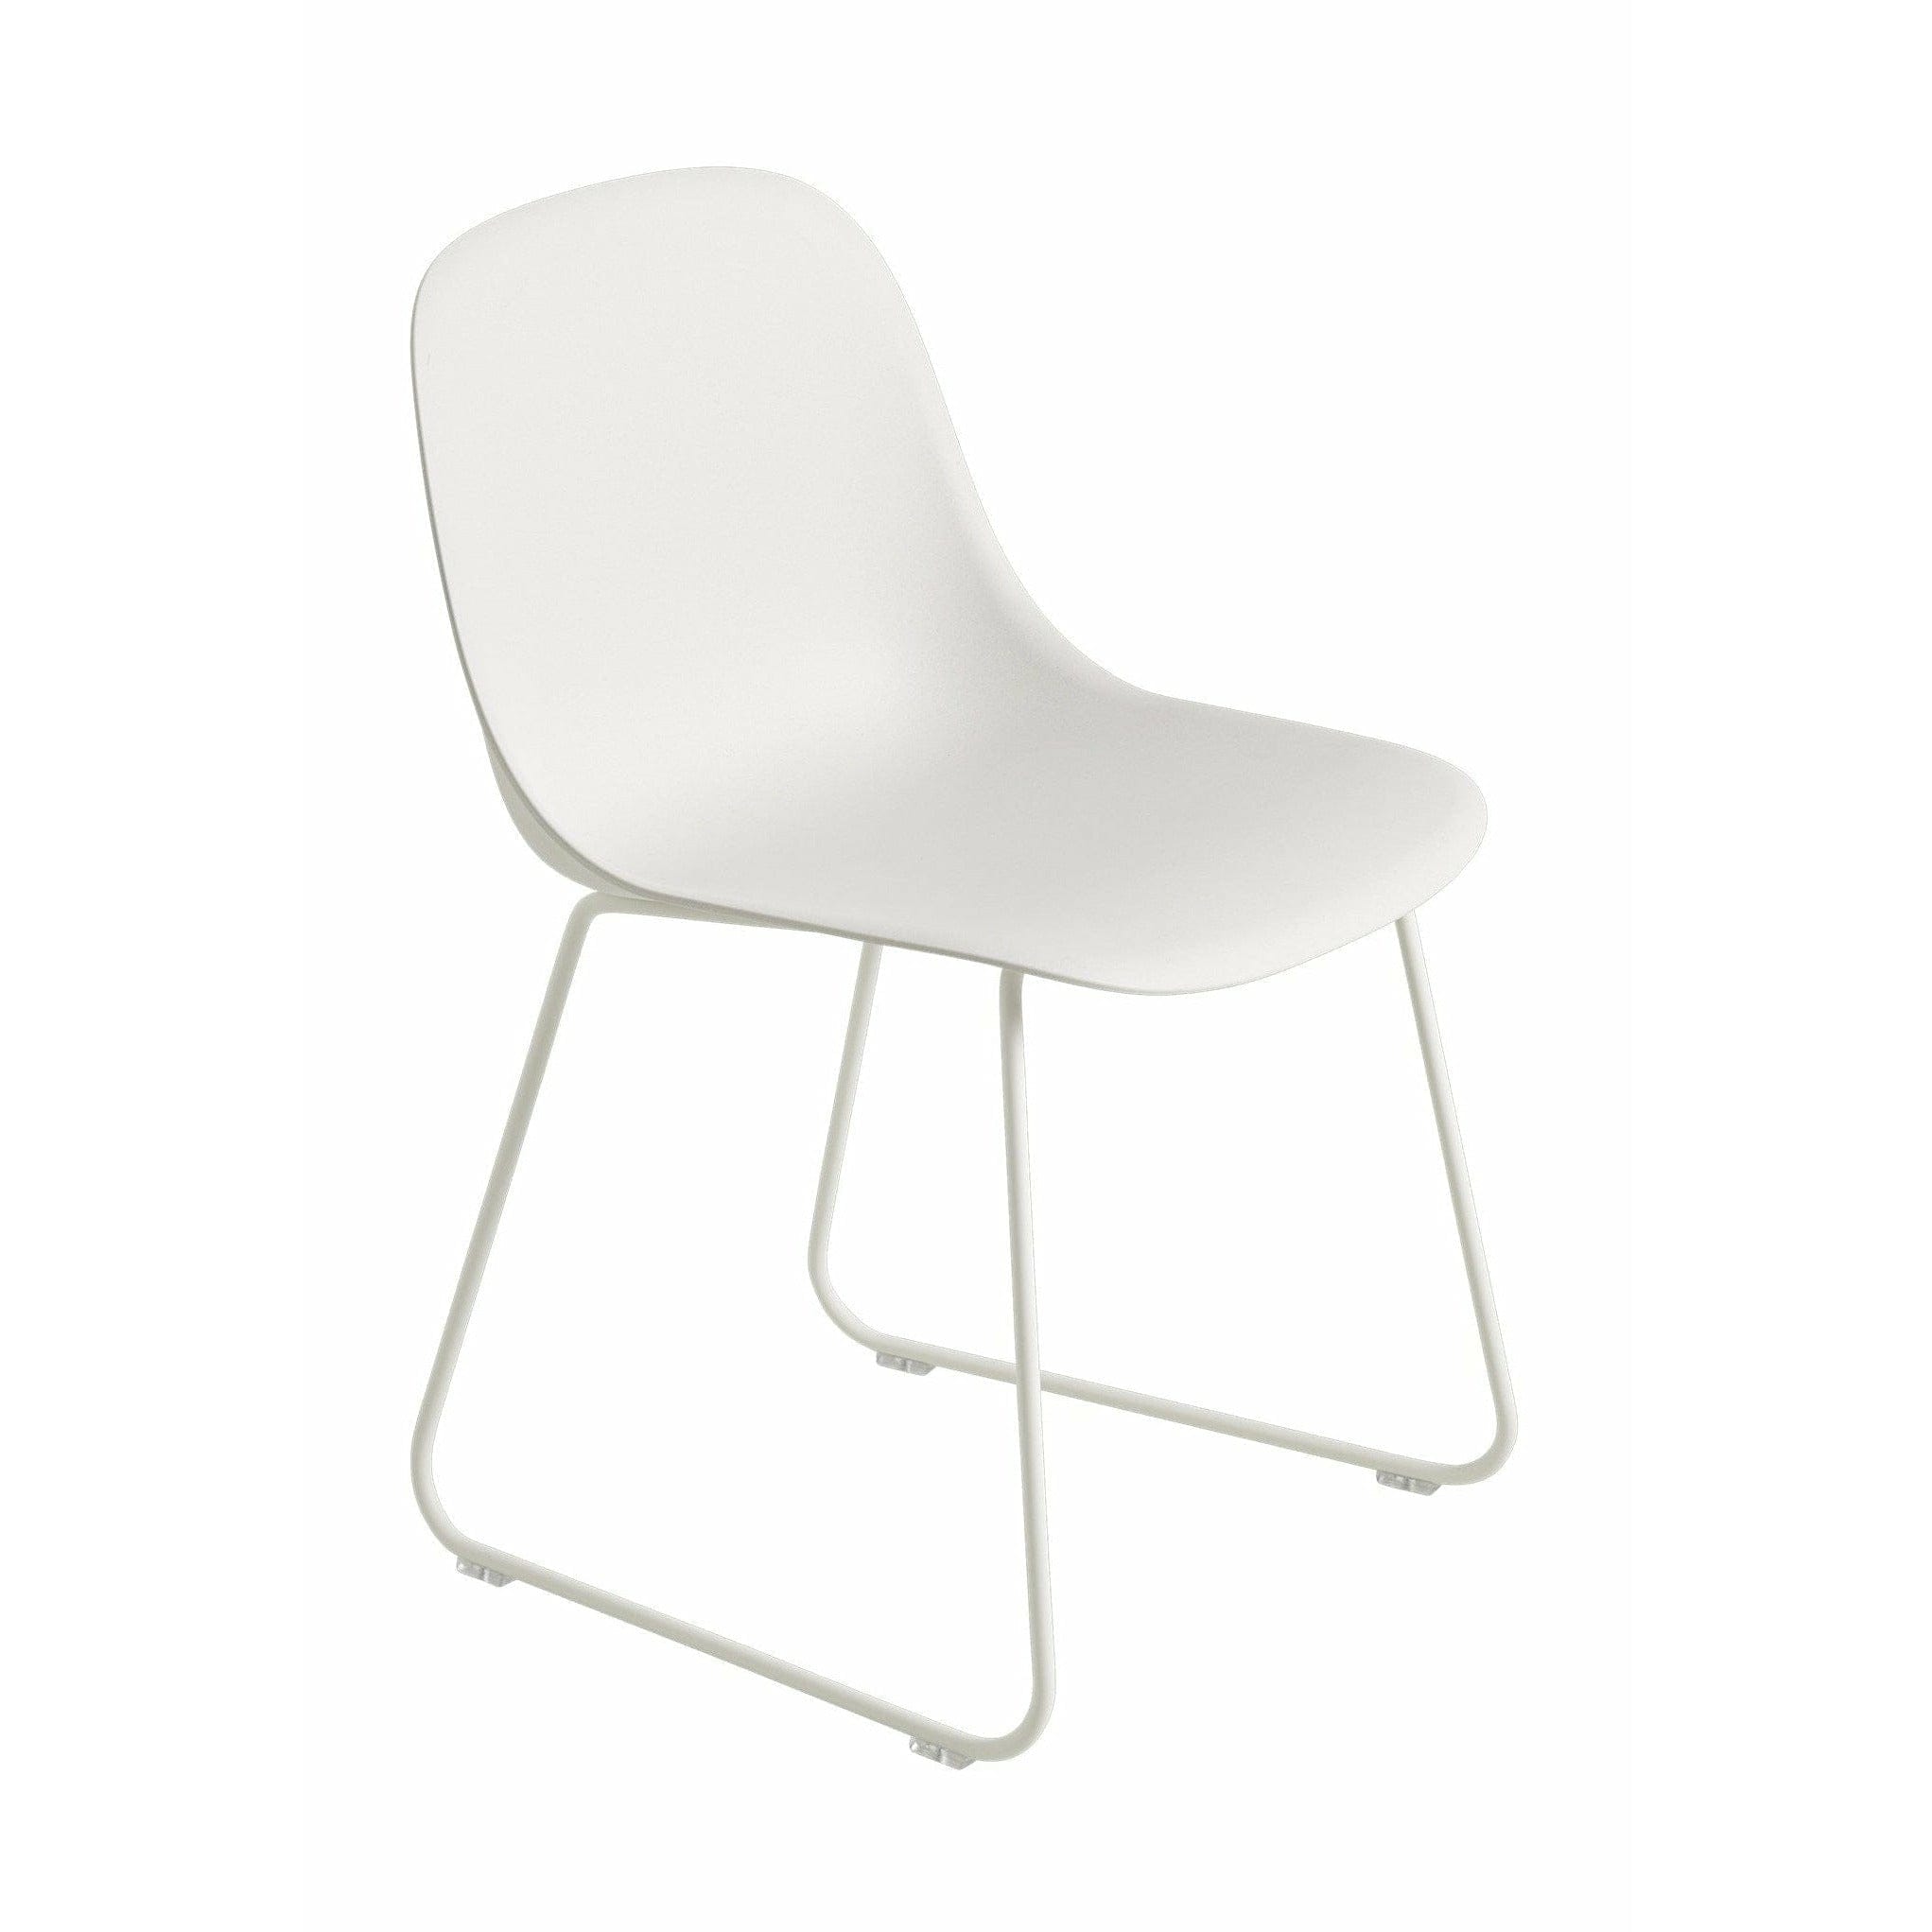 Muuto Fiber Side Chair (återvunnen) Sluded Base, Nature White/White